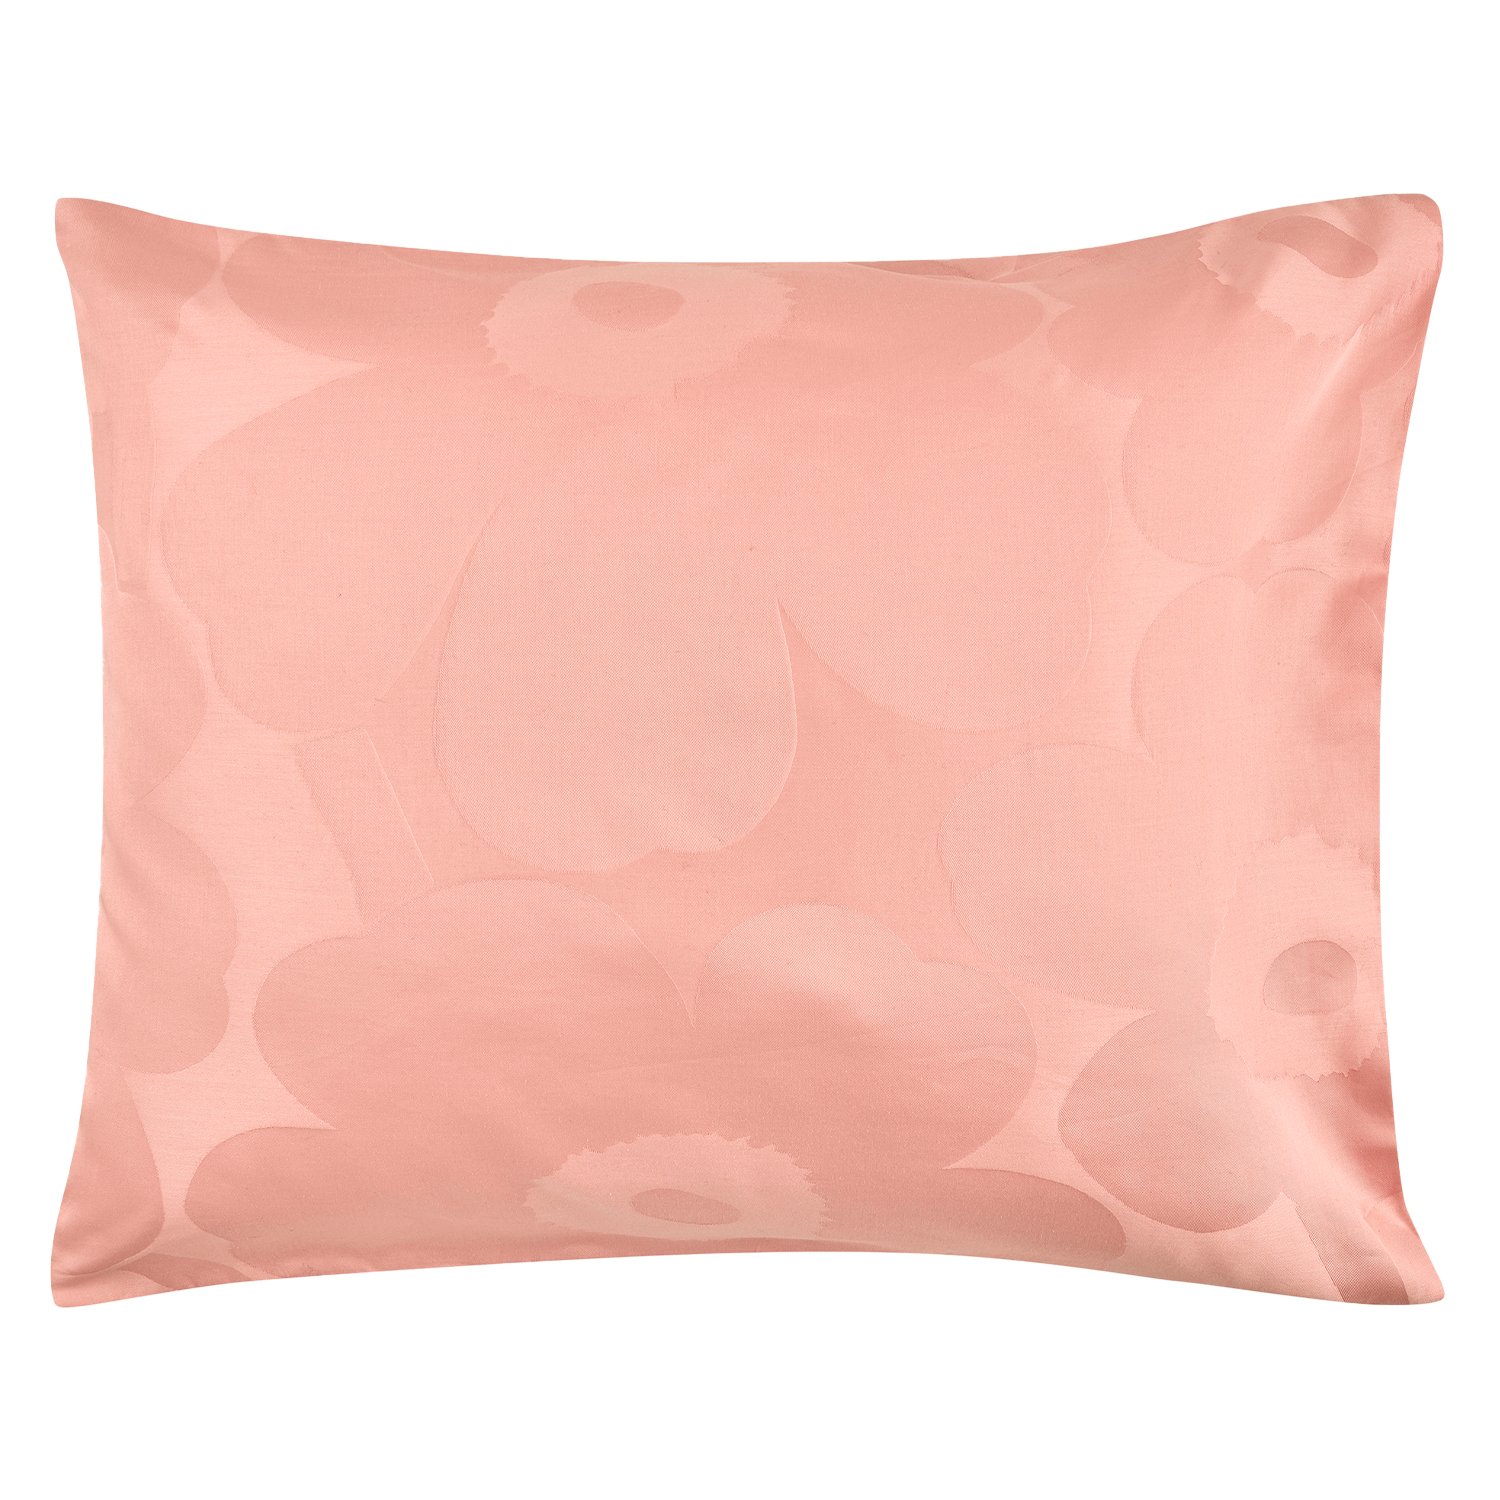 Marimekko Unikko tyynyliina, 50 x 60 cm, puuteri - vaaleanpunainen